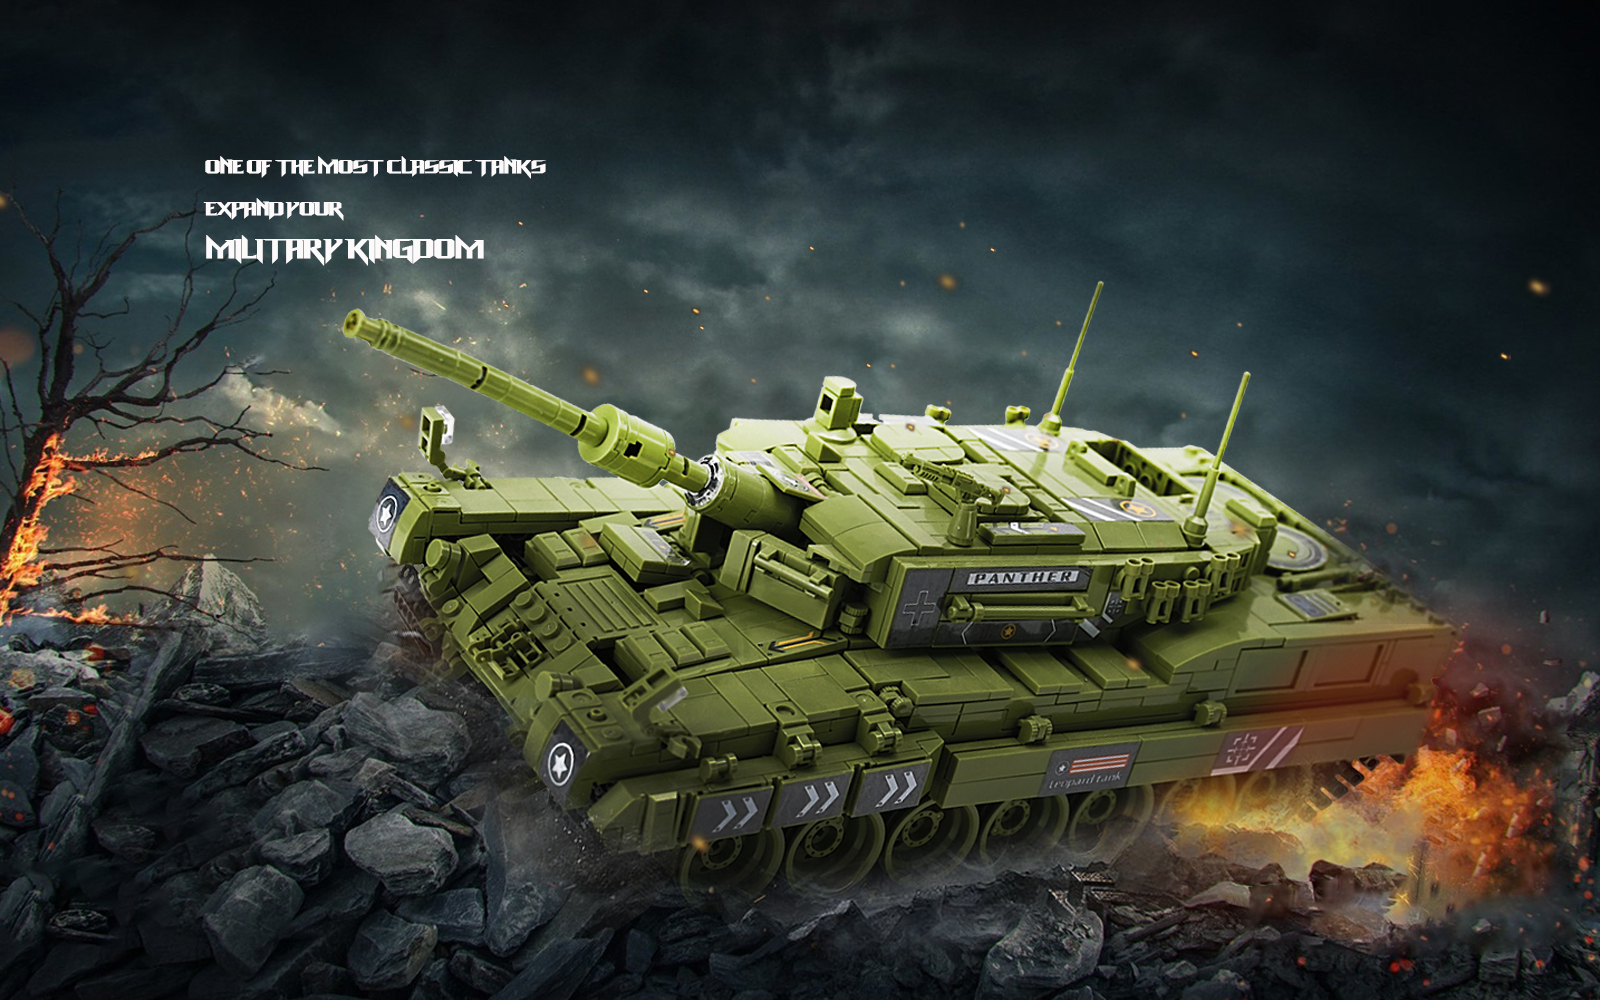 REVIEW: Nifeliz Leopard II Main Battle Tank